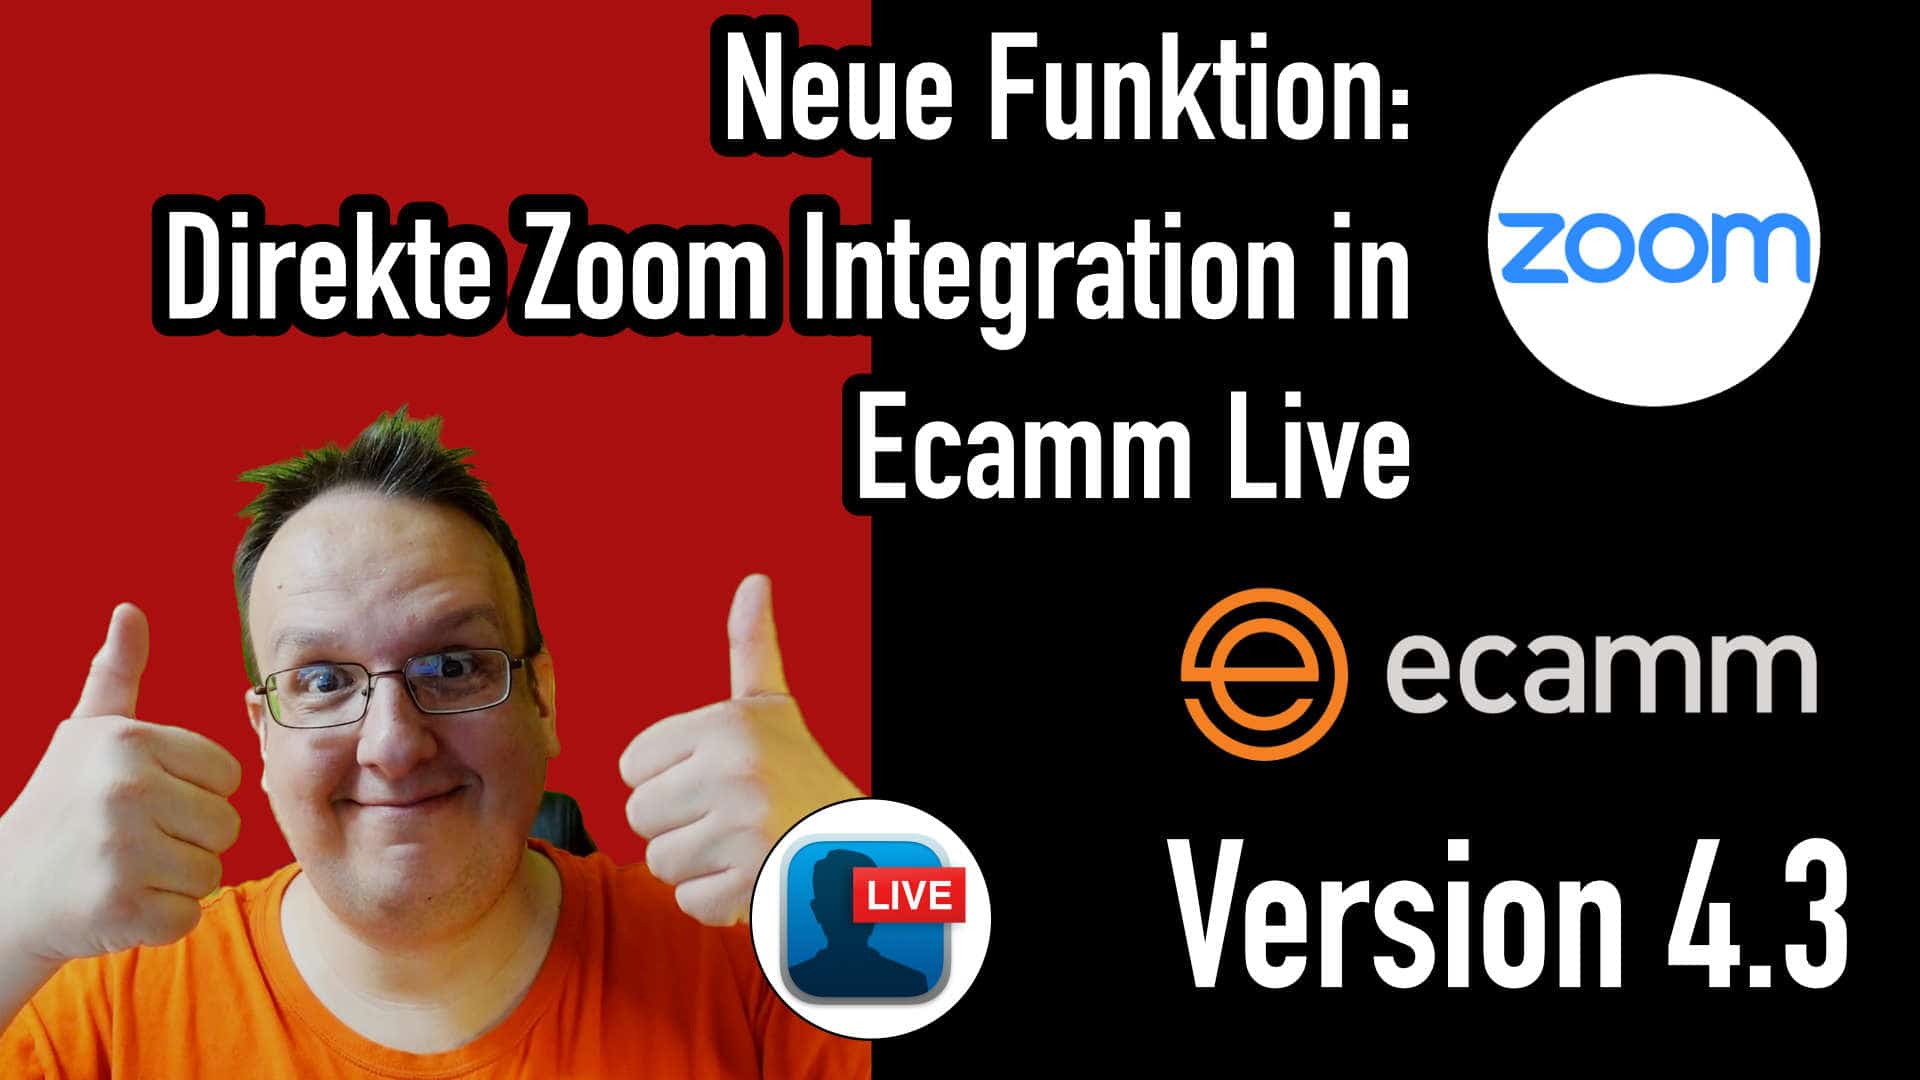 Ecamm Live 4.3 (Beta) Neue direkte Zoom Integration